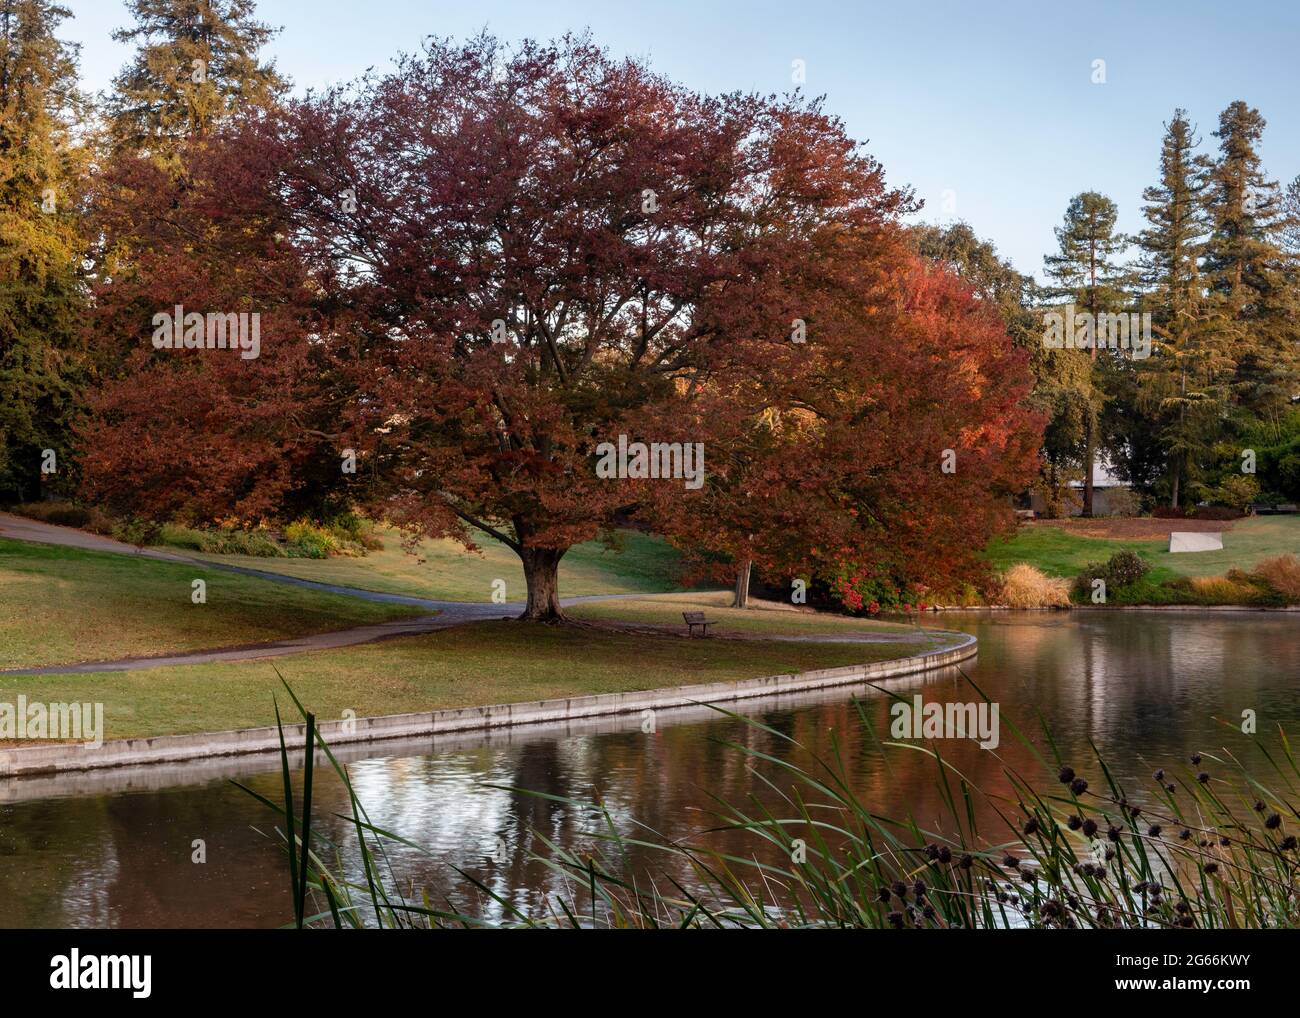 Arbre coloré à l'arboretum de l'UC Davis à l'automne se reflétant sur le lac Spafford, la couleur prédominante est le rouge Banque D'Images